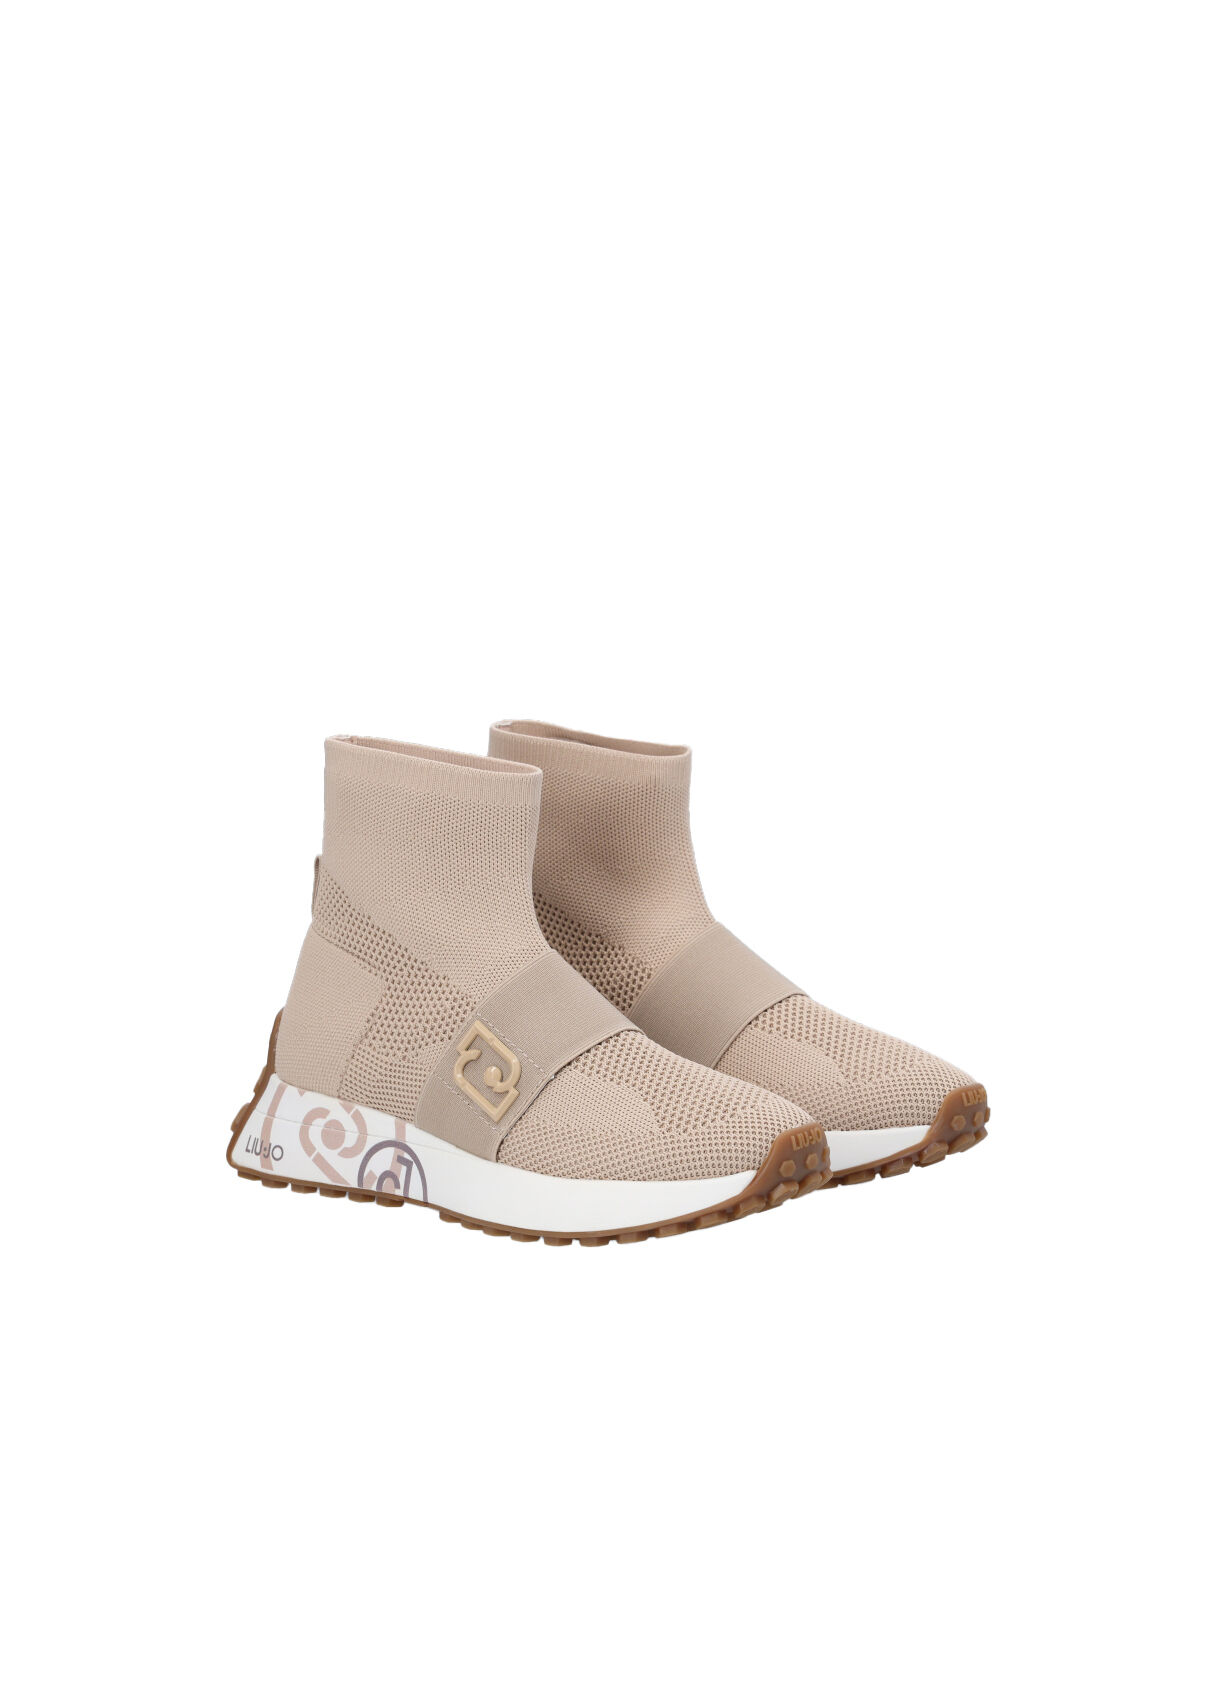 Fendi Mania Sock Sneaker Size 8 (No Box) – Milk Room: Luxury Streetwear x  Vintage x Sneakers